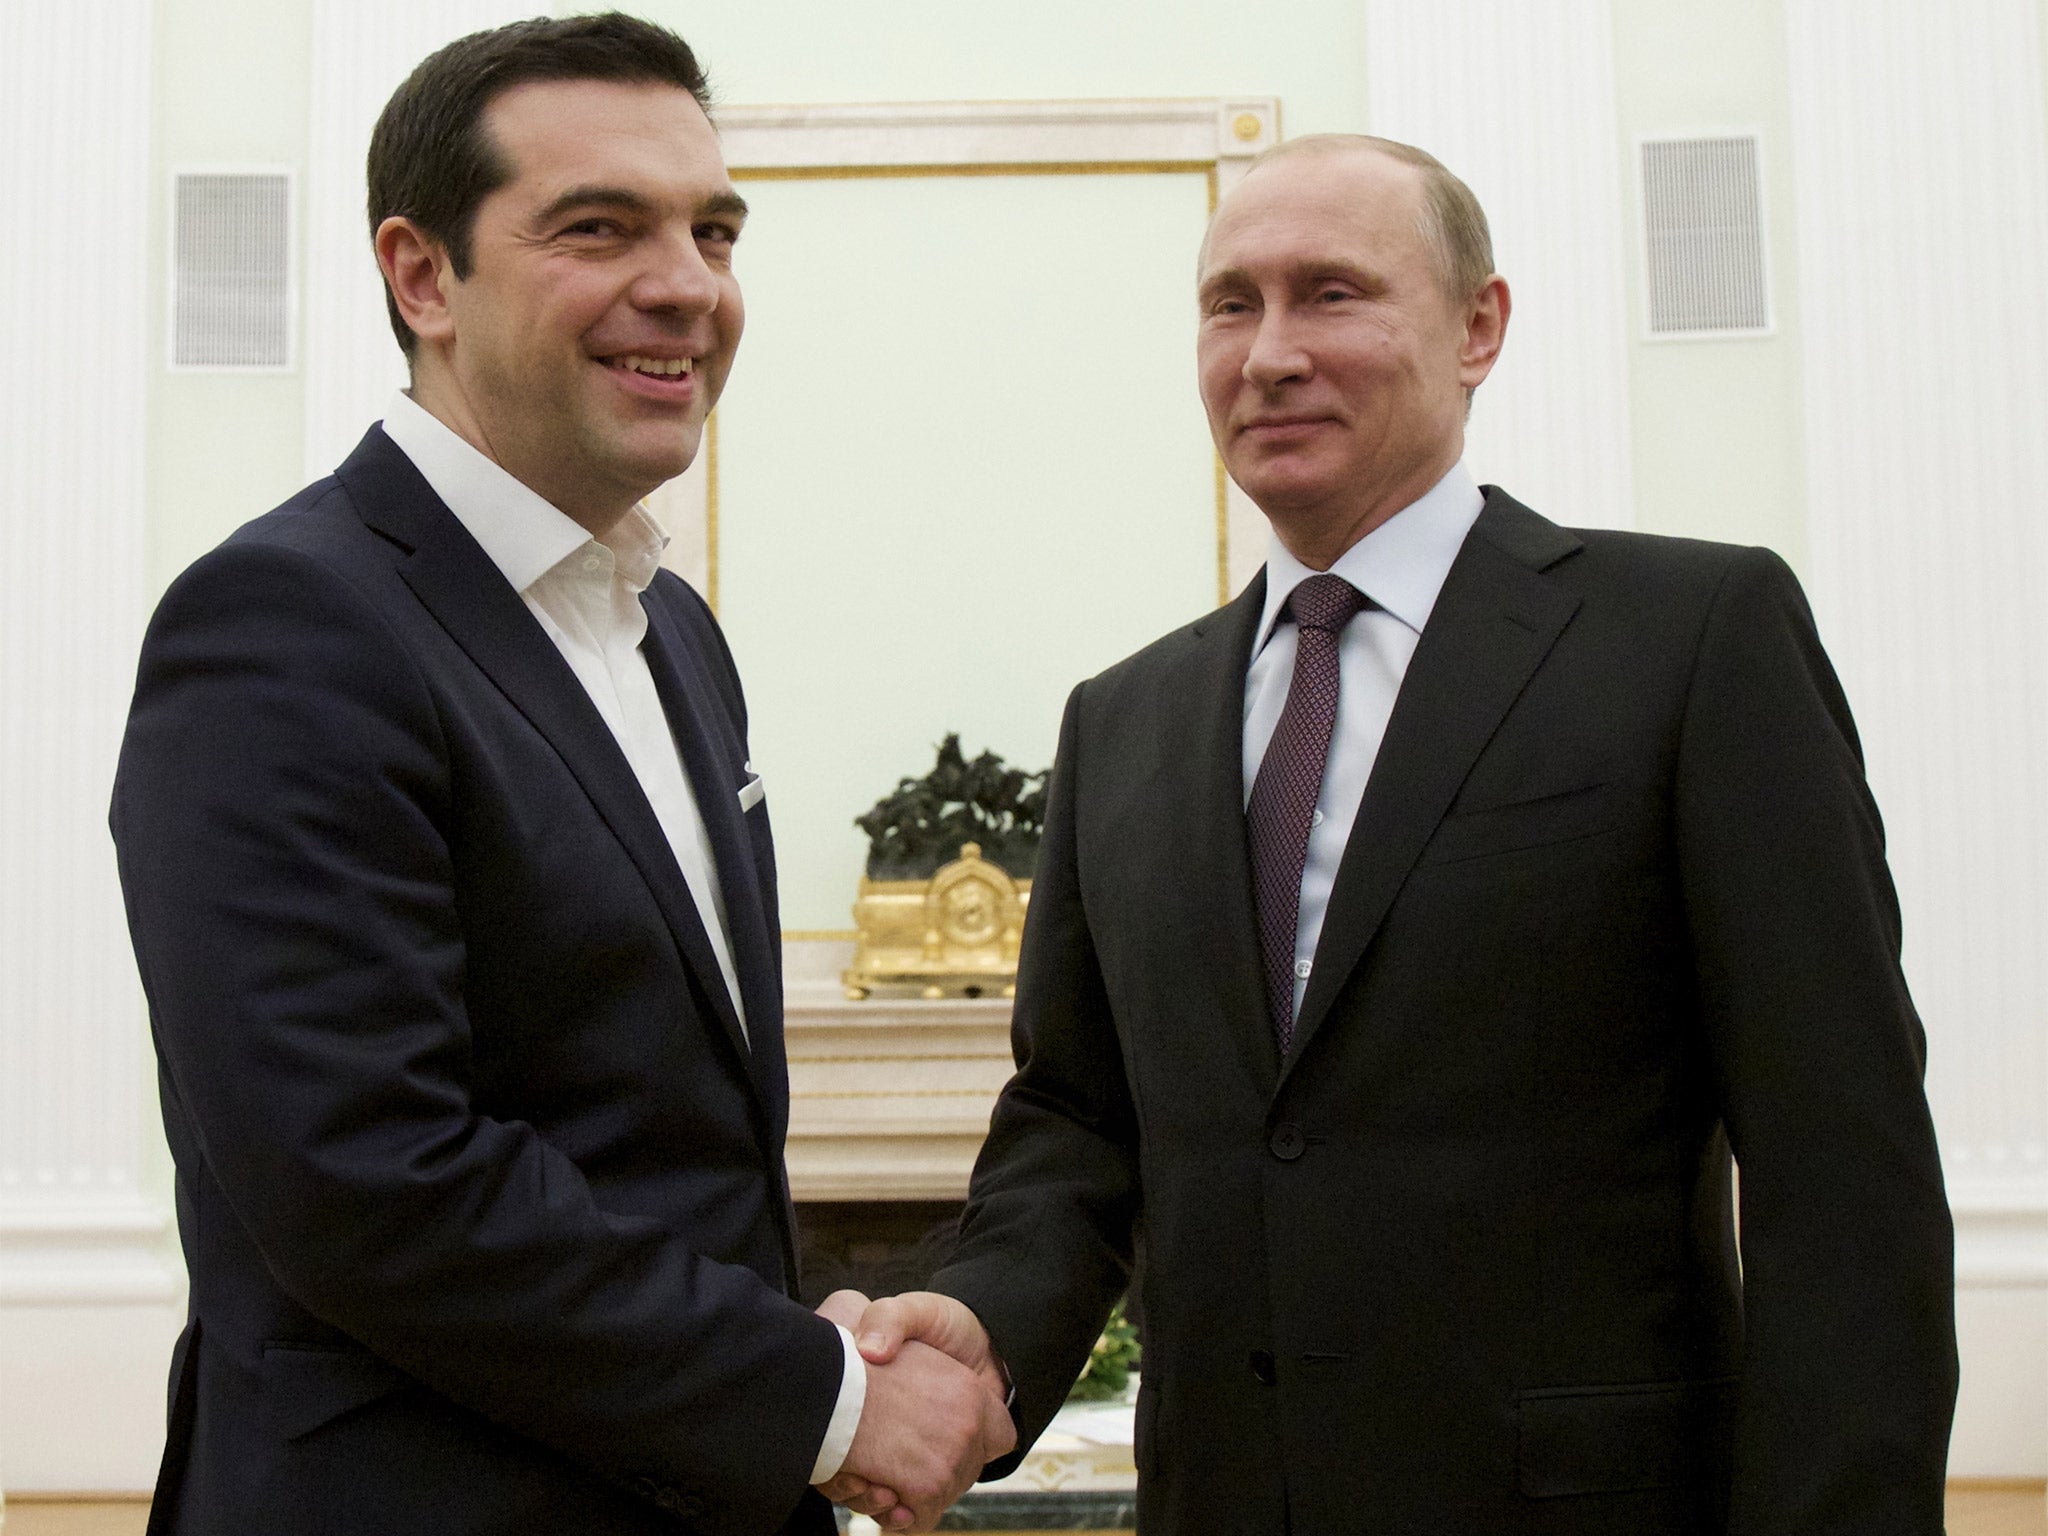 Greek Prime Minister Alexis Tsipras visited Vladimir Putin at the Kremlin on Wednesday